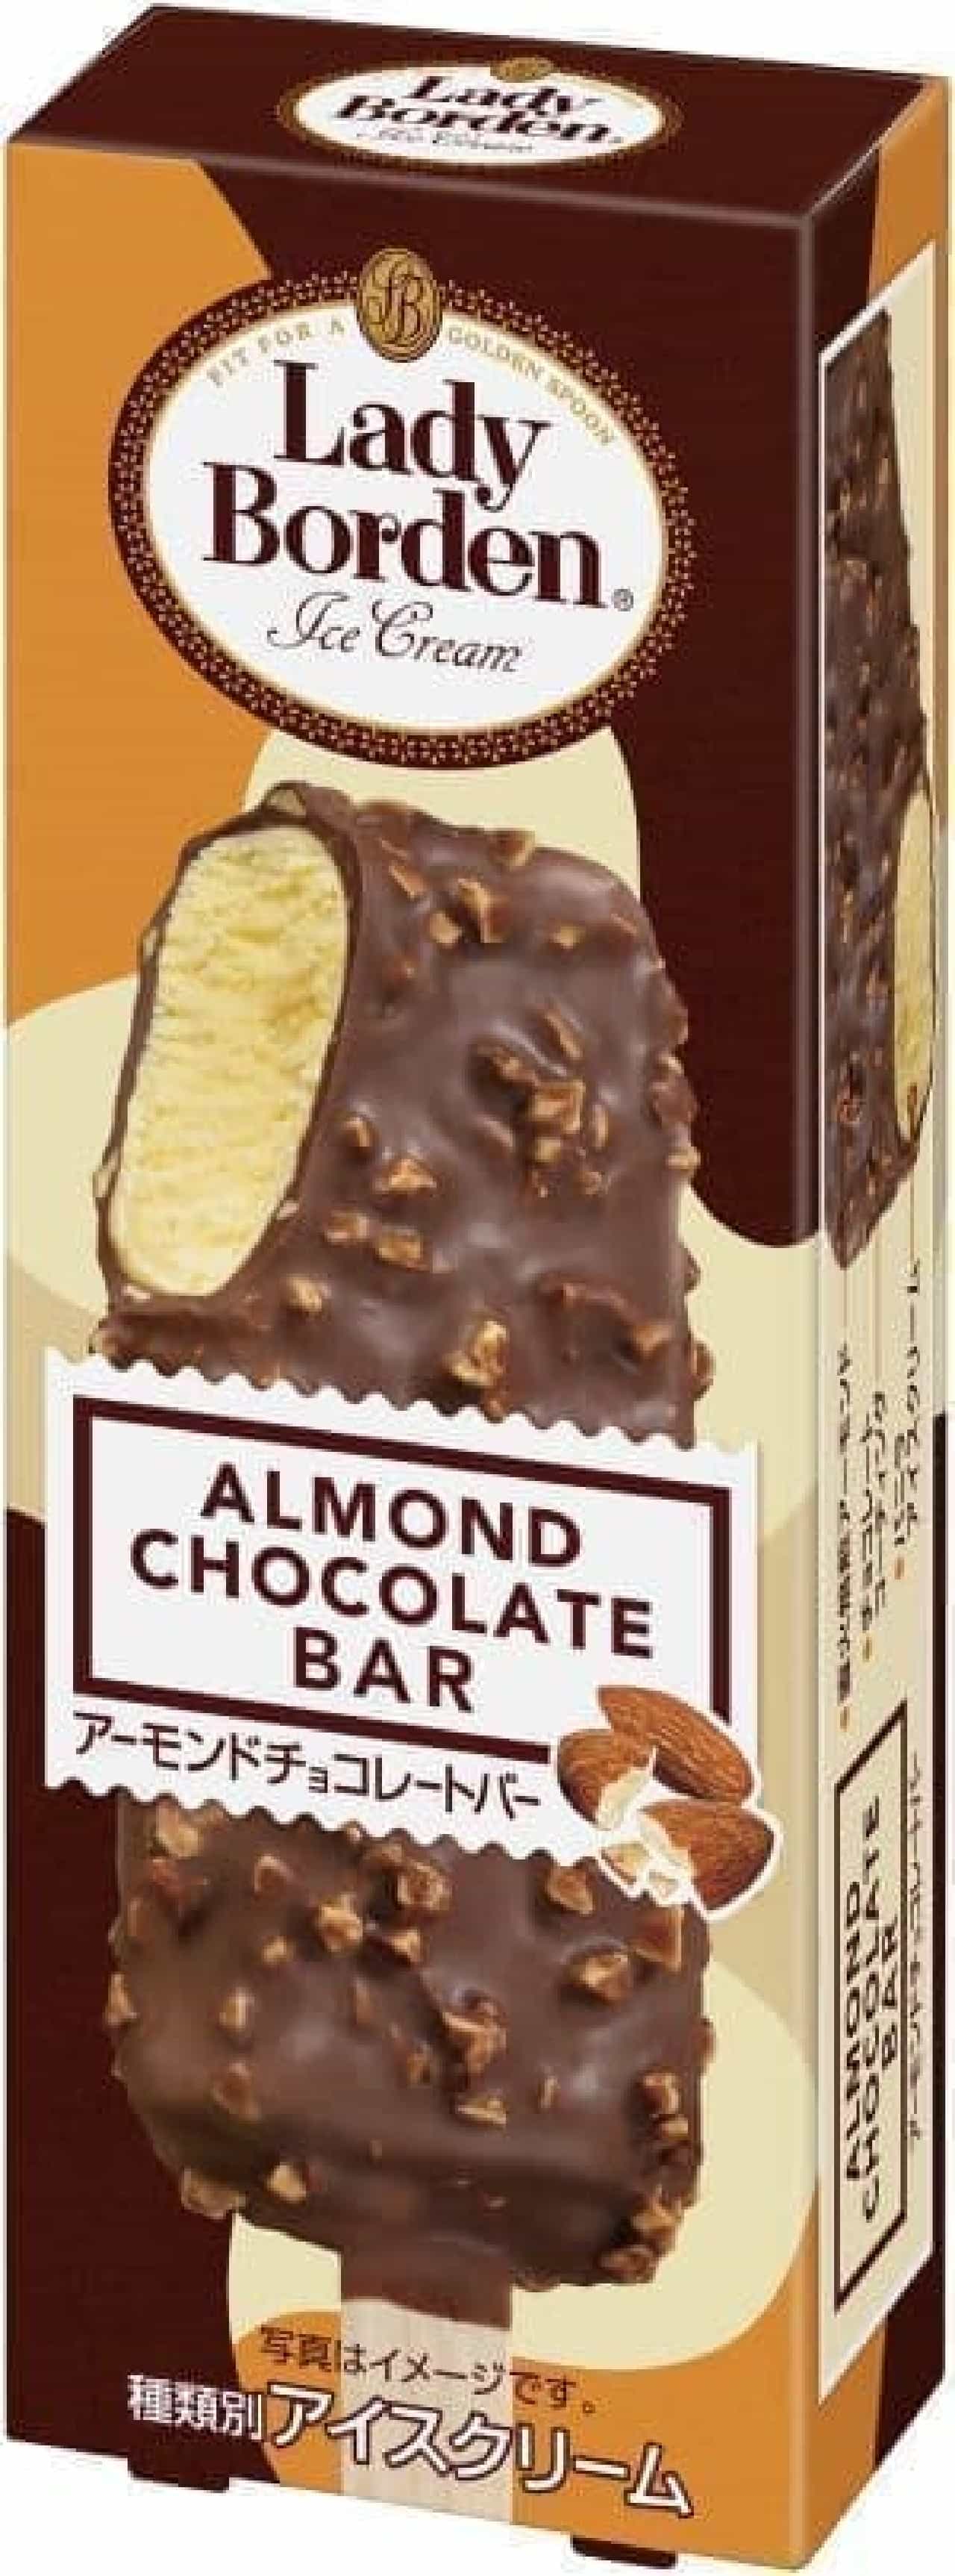 レディーボーデン アーモンドチョコレートバー